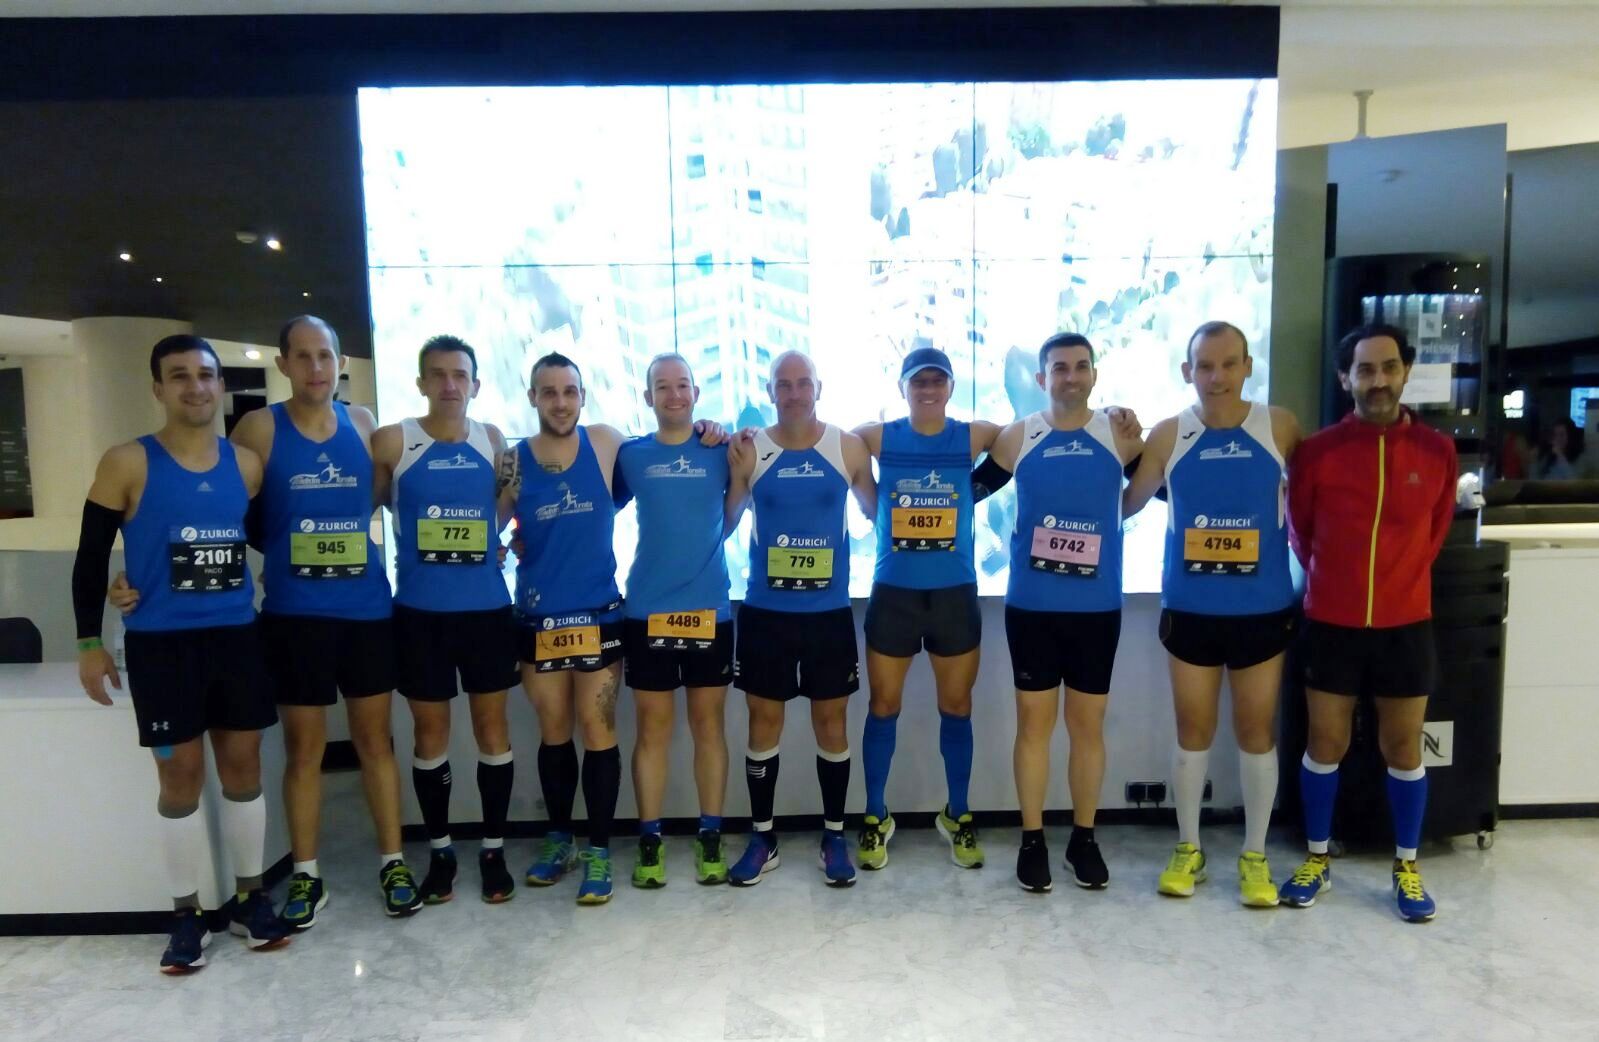 Nueve corredores de Fondistas Moralos disputan la XXXIII Maratón de Sevilla